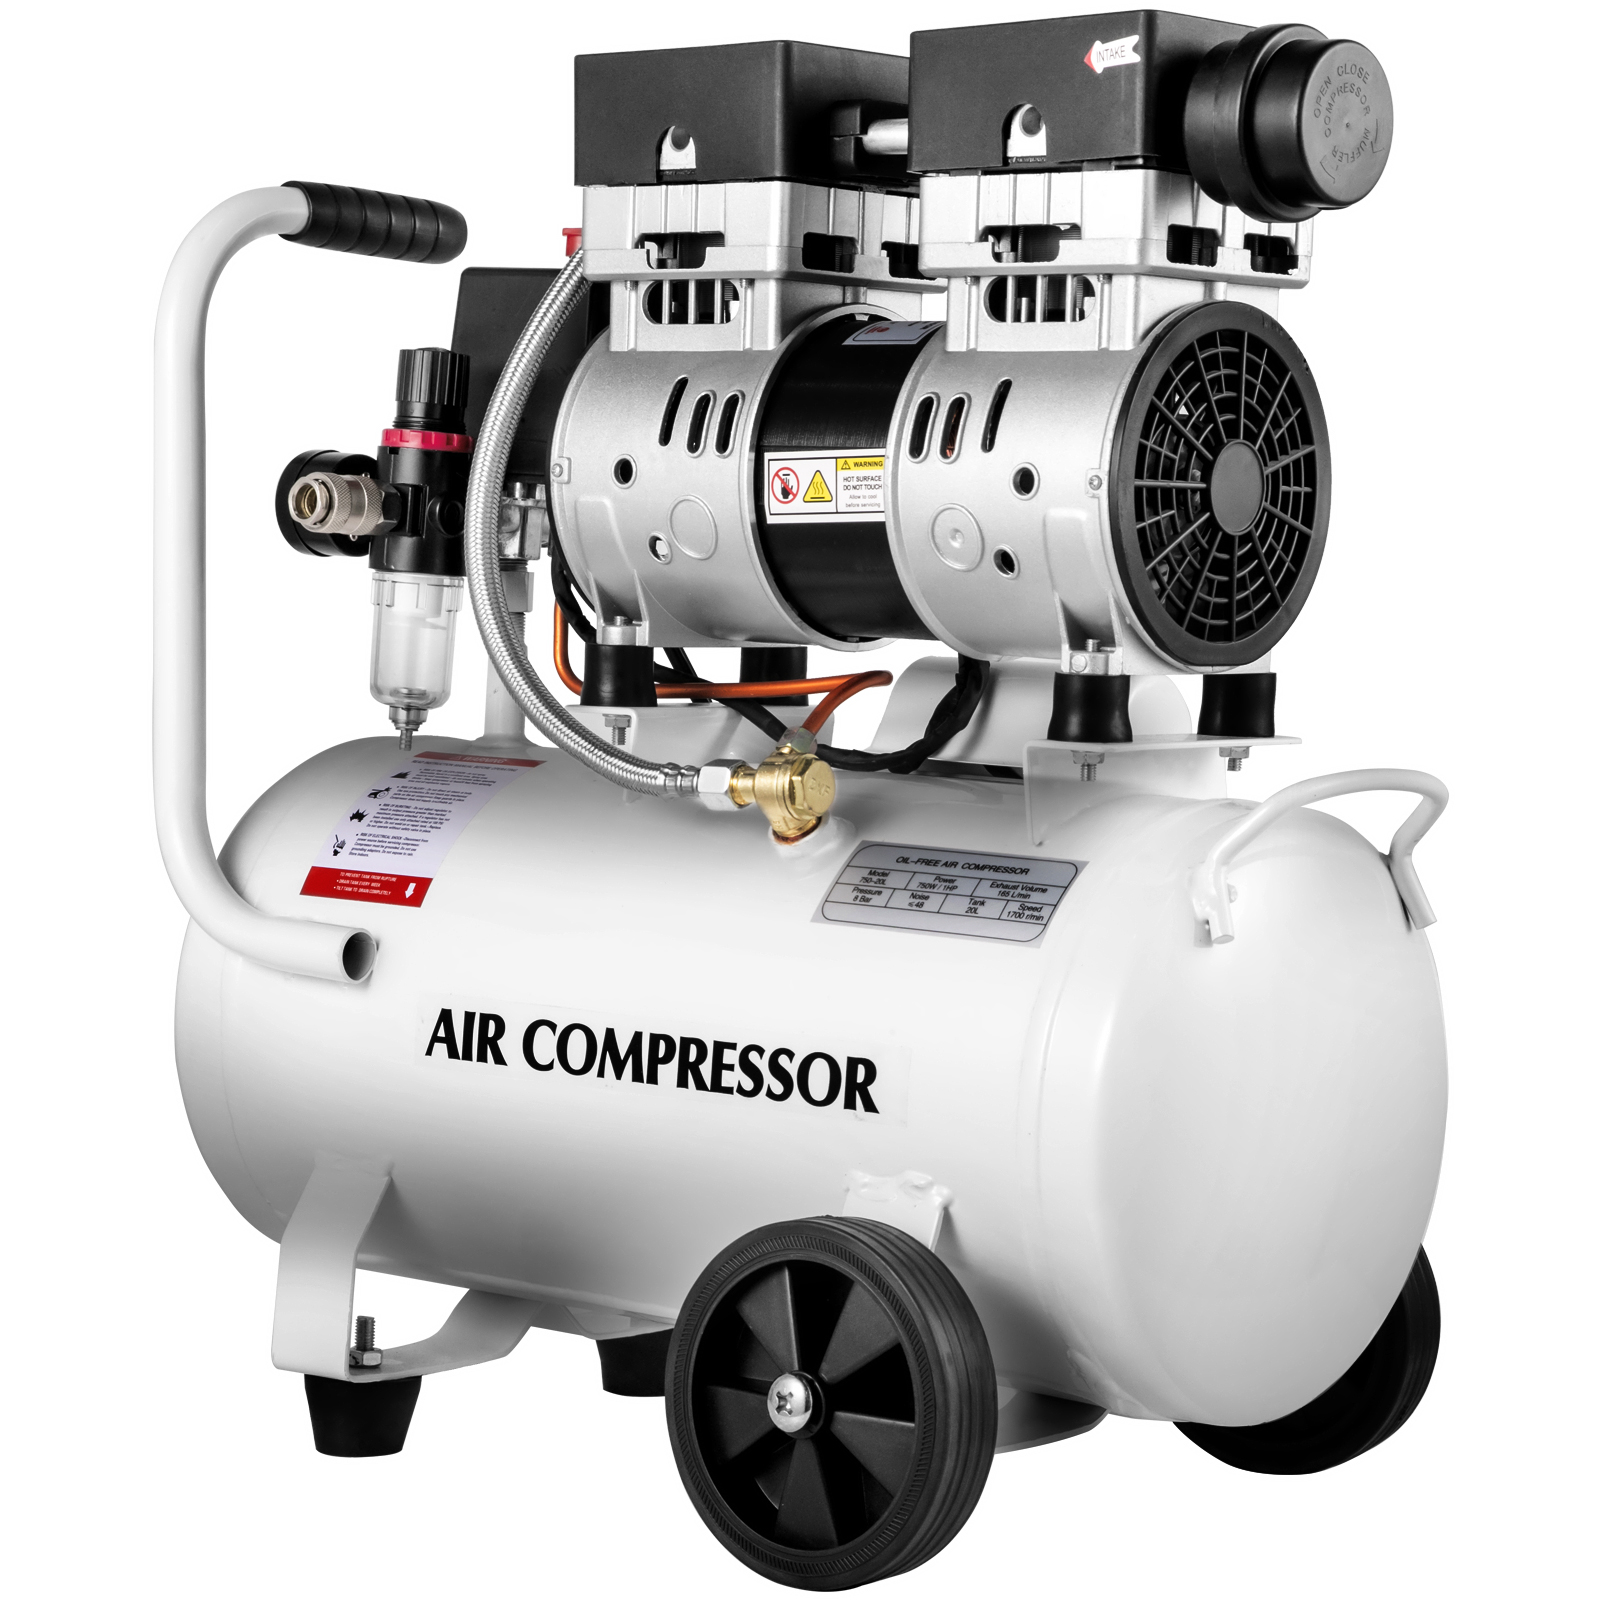 quiet air compressor